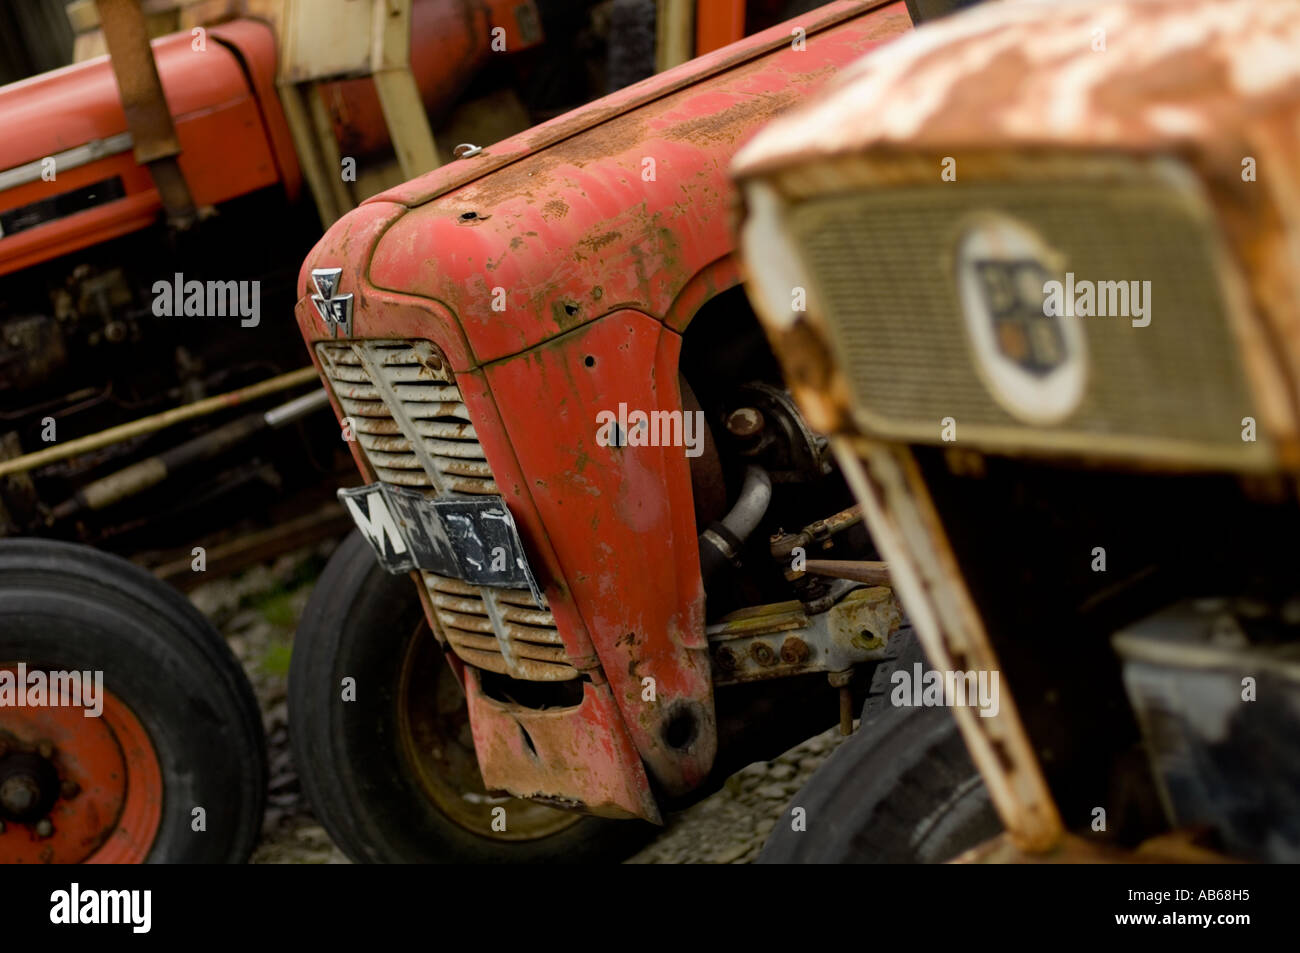 Vieux tracteurs rouillés alignés dans un garage de l'ouest du pays de Galles Ceredigion Aberystwyth Llanfarian Banque D'Images